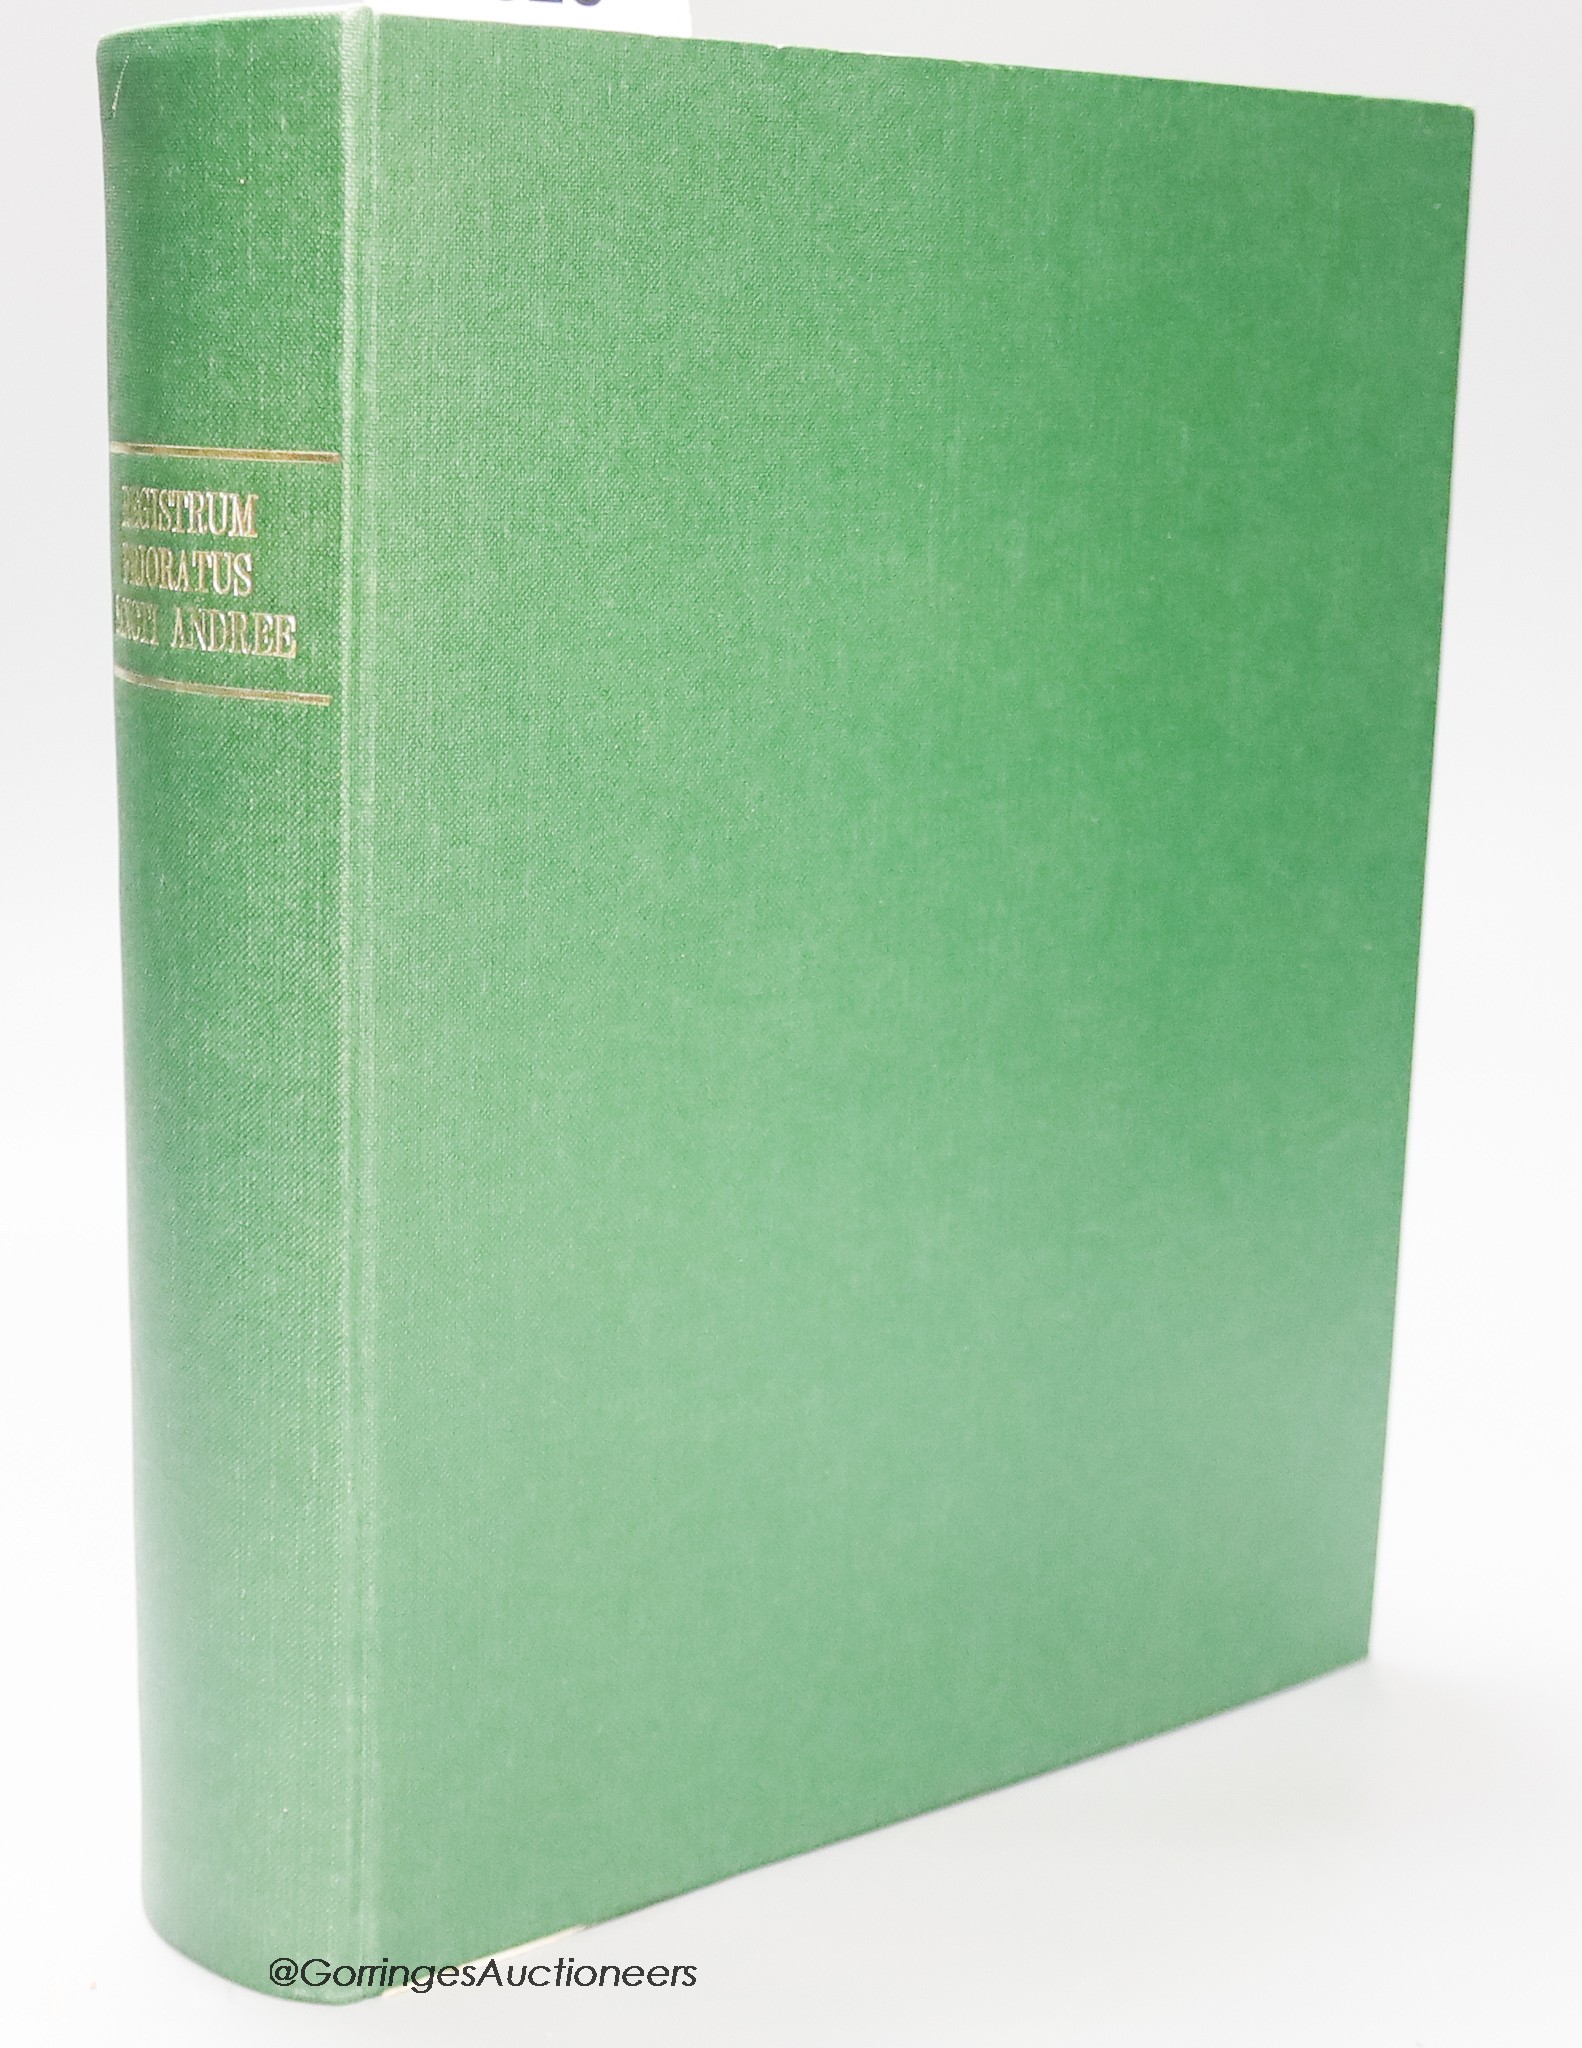 Book - Liber Cartarum Prioratus Sancti Andree in Scotia, Edinburgh 1861